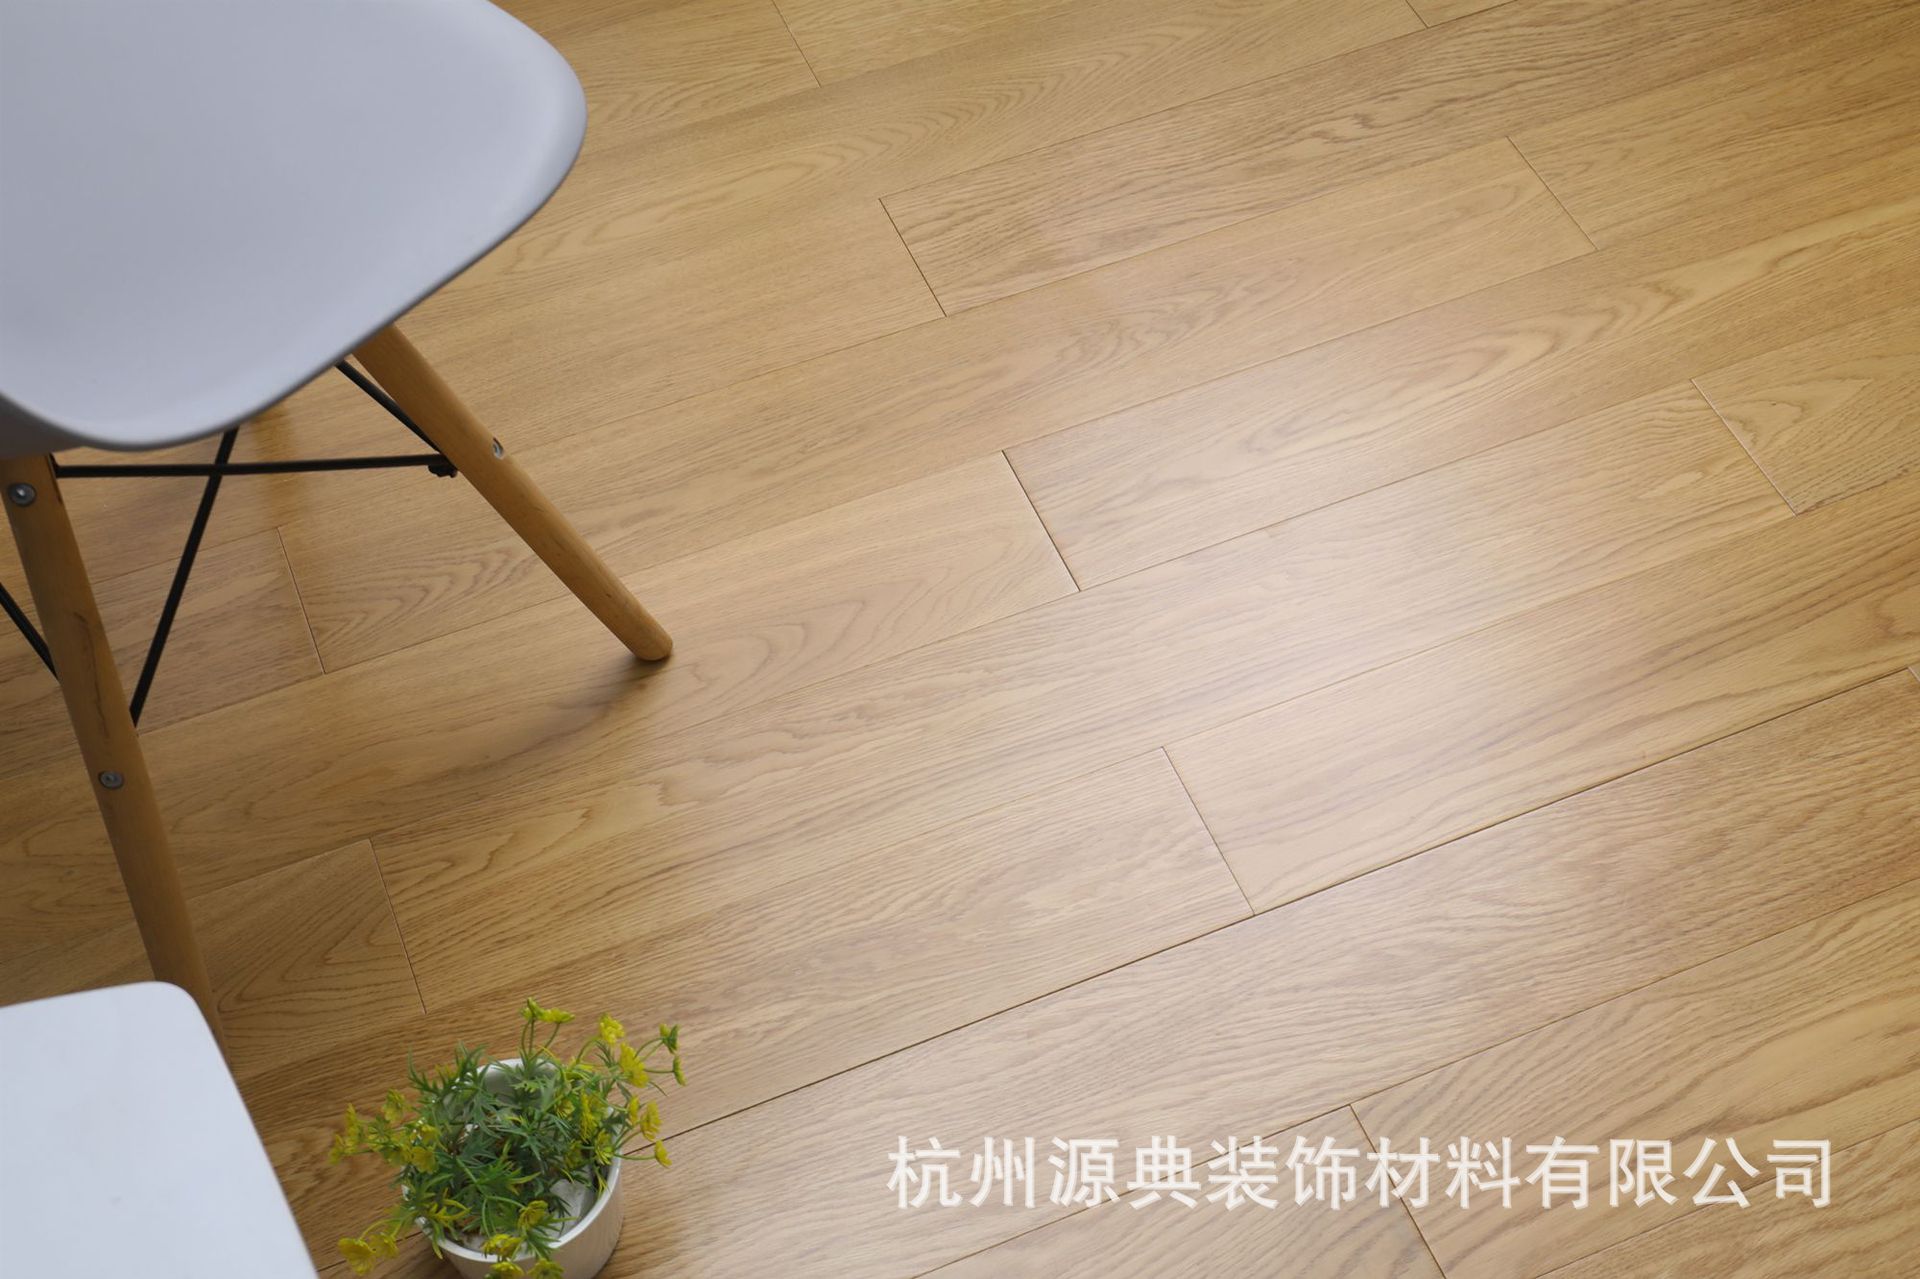 橡木本色实木多层地板,规格:910x127x15mm 经典颜色,欢迎广大设计师